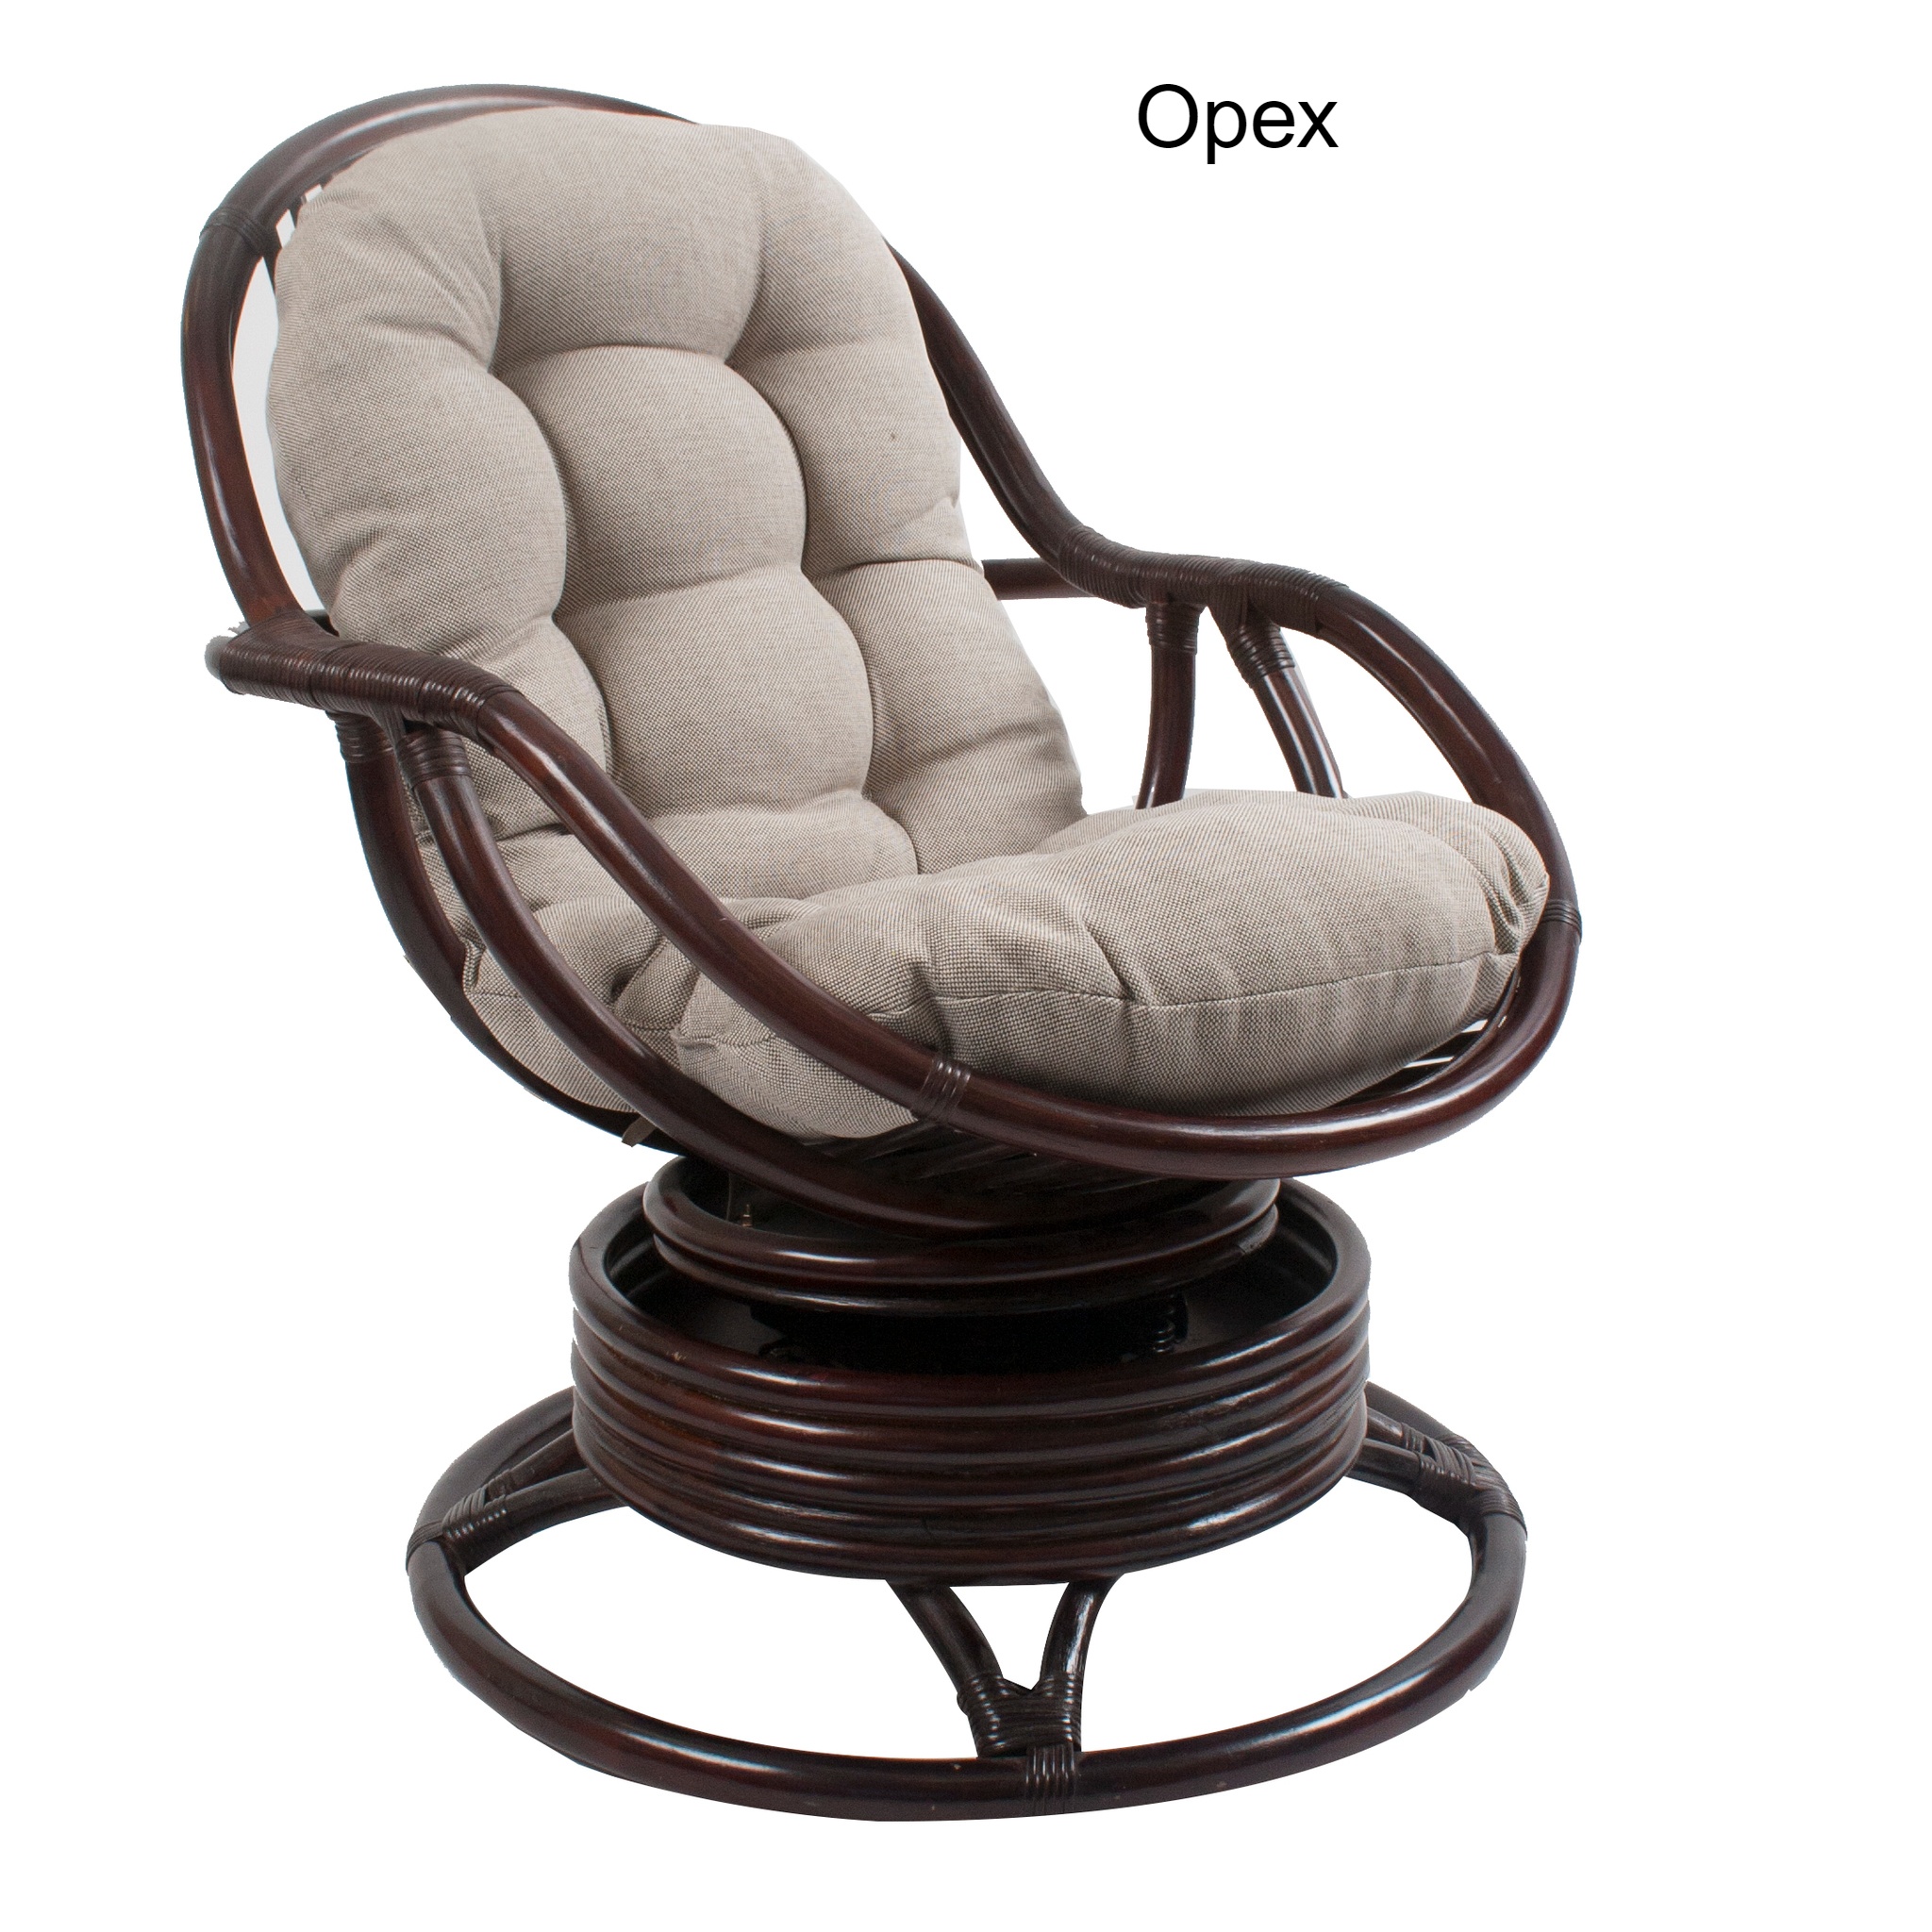 Импекс мебель сайт. Кресло-качалка RATTANDESIGN. Кресло кресло качалка мебель Импэкс. Кресло-качалка «Роули» Импекс. Mebel Impex кресло качалка.